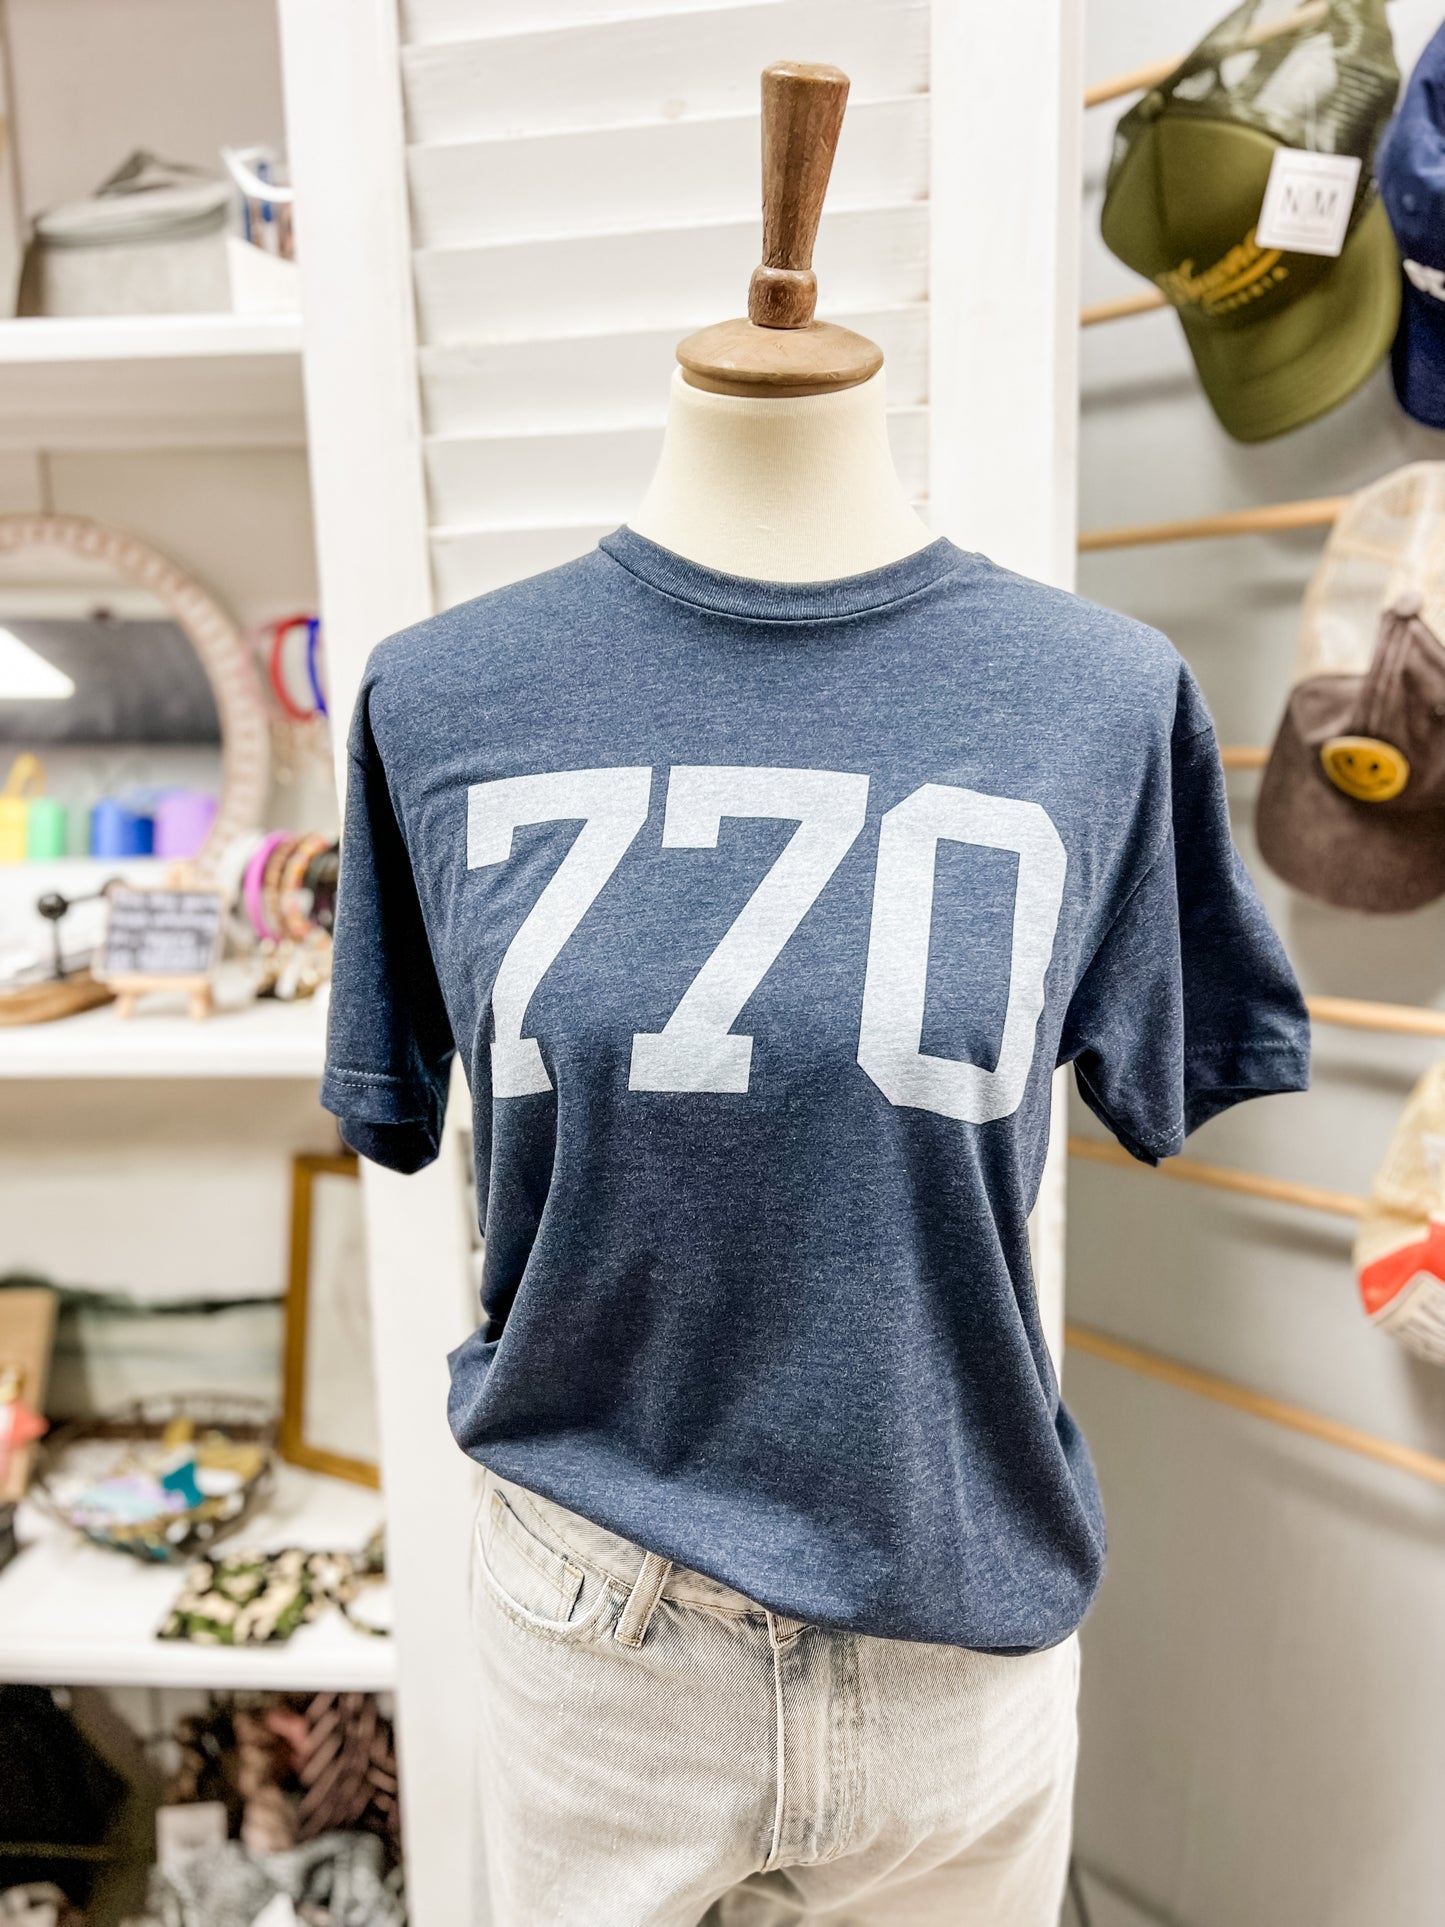 770 Zip Code T-shirt